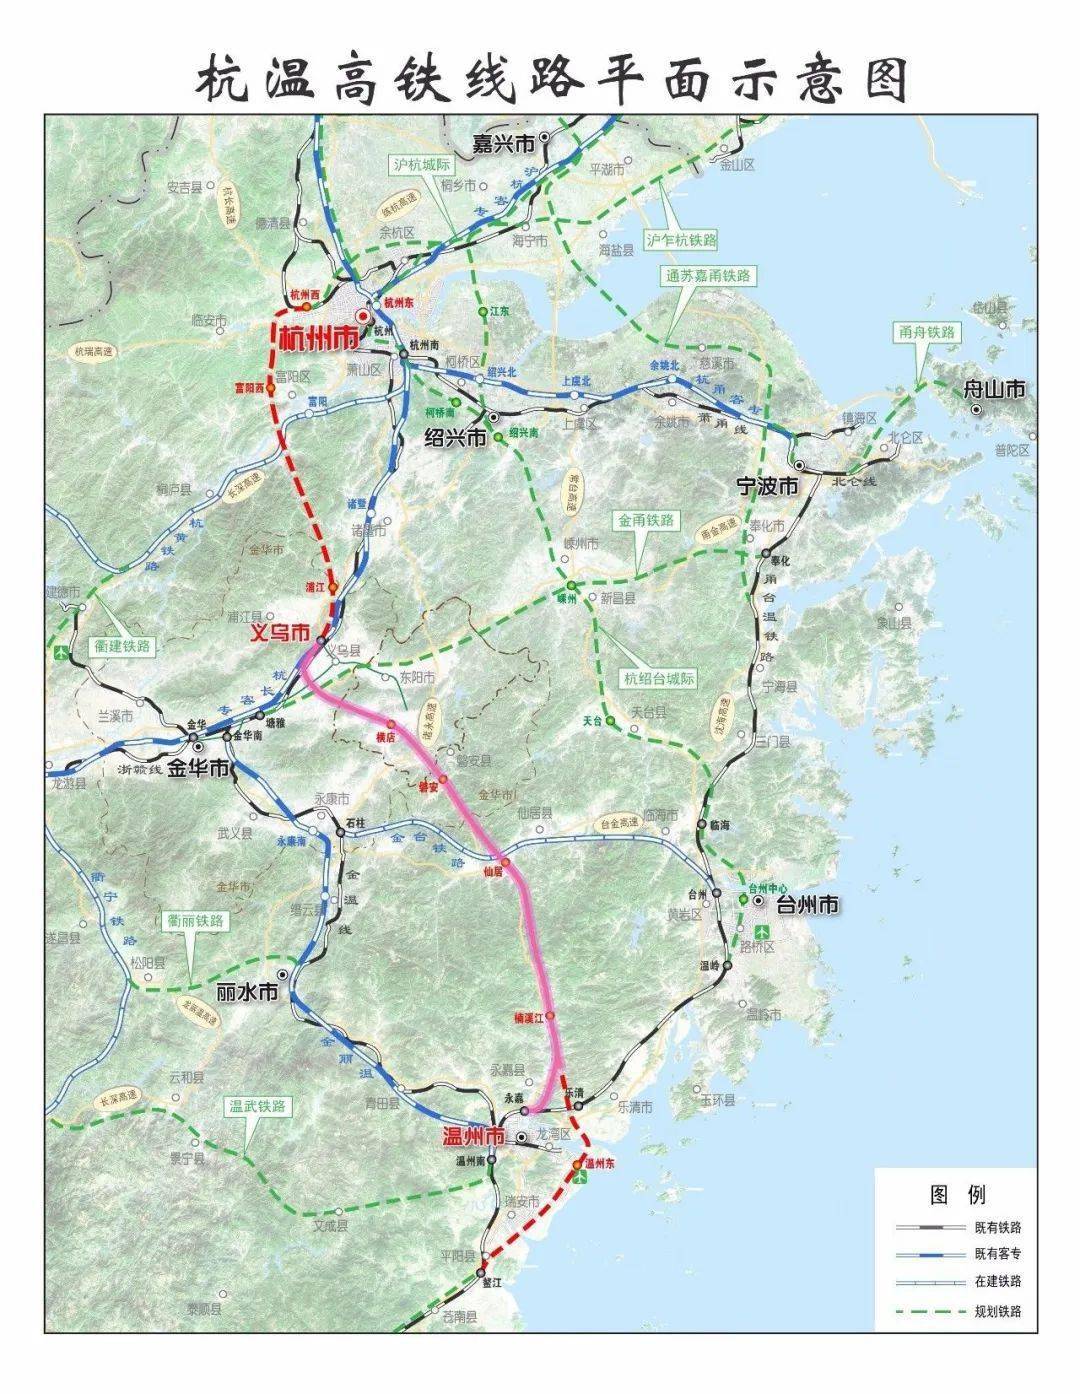 网友鳌江流域提问:规划中的温福城际高铁会在平阳设站吗?